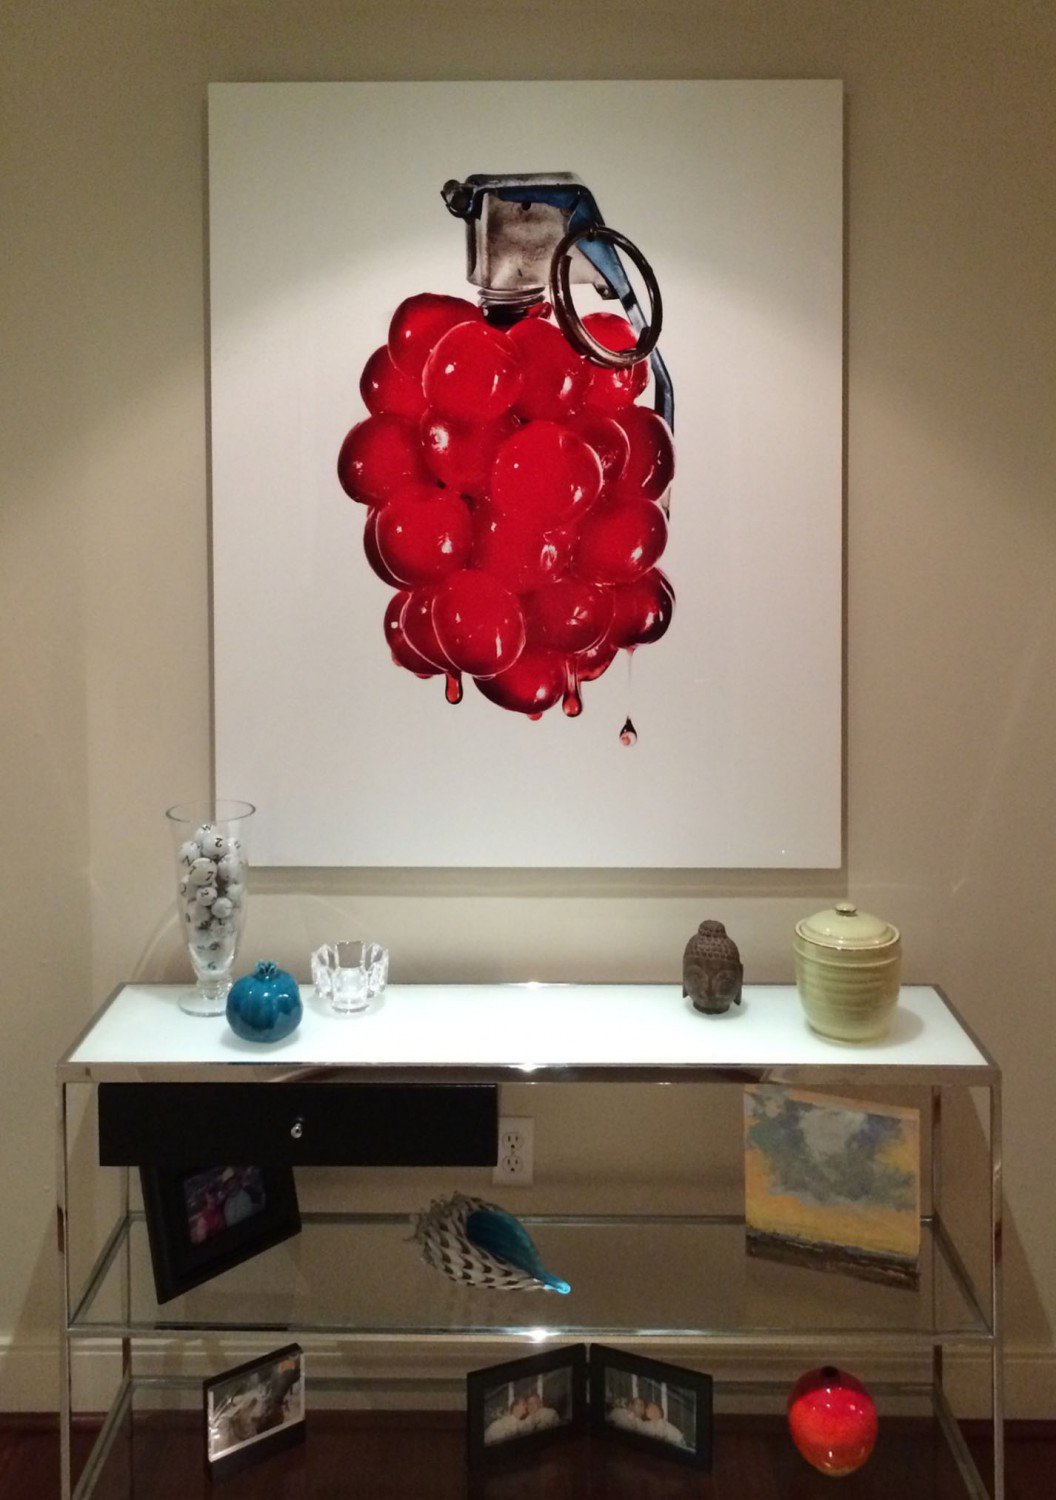 Matt McKee's Cherry Bomb! installed in art collector's home